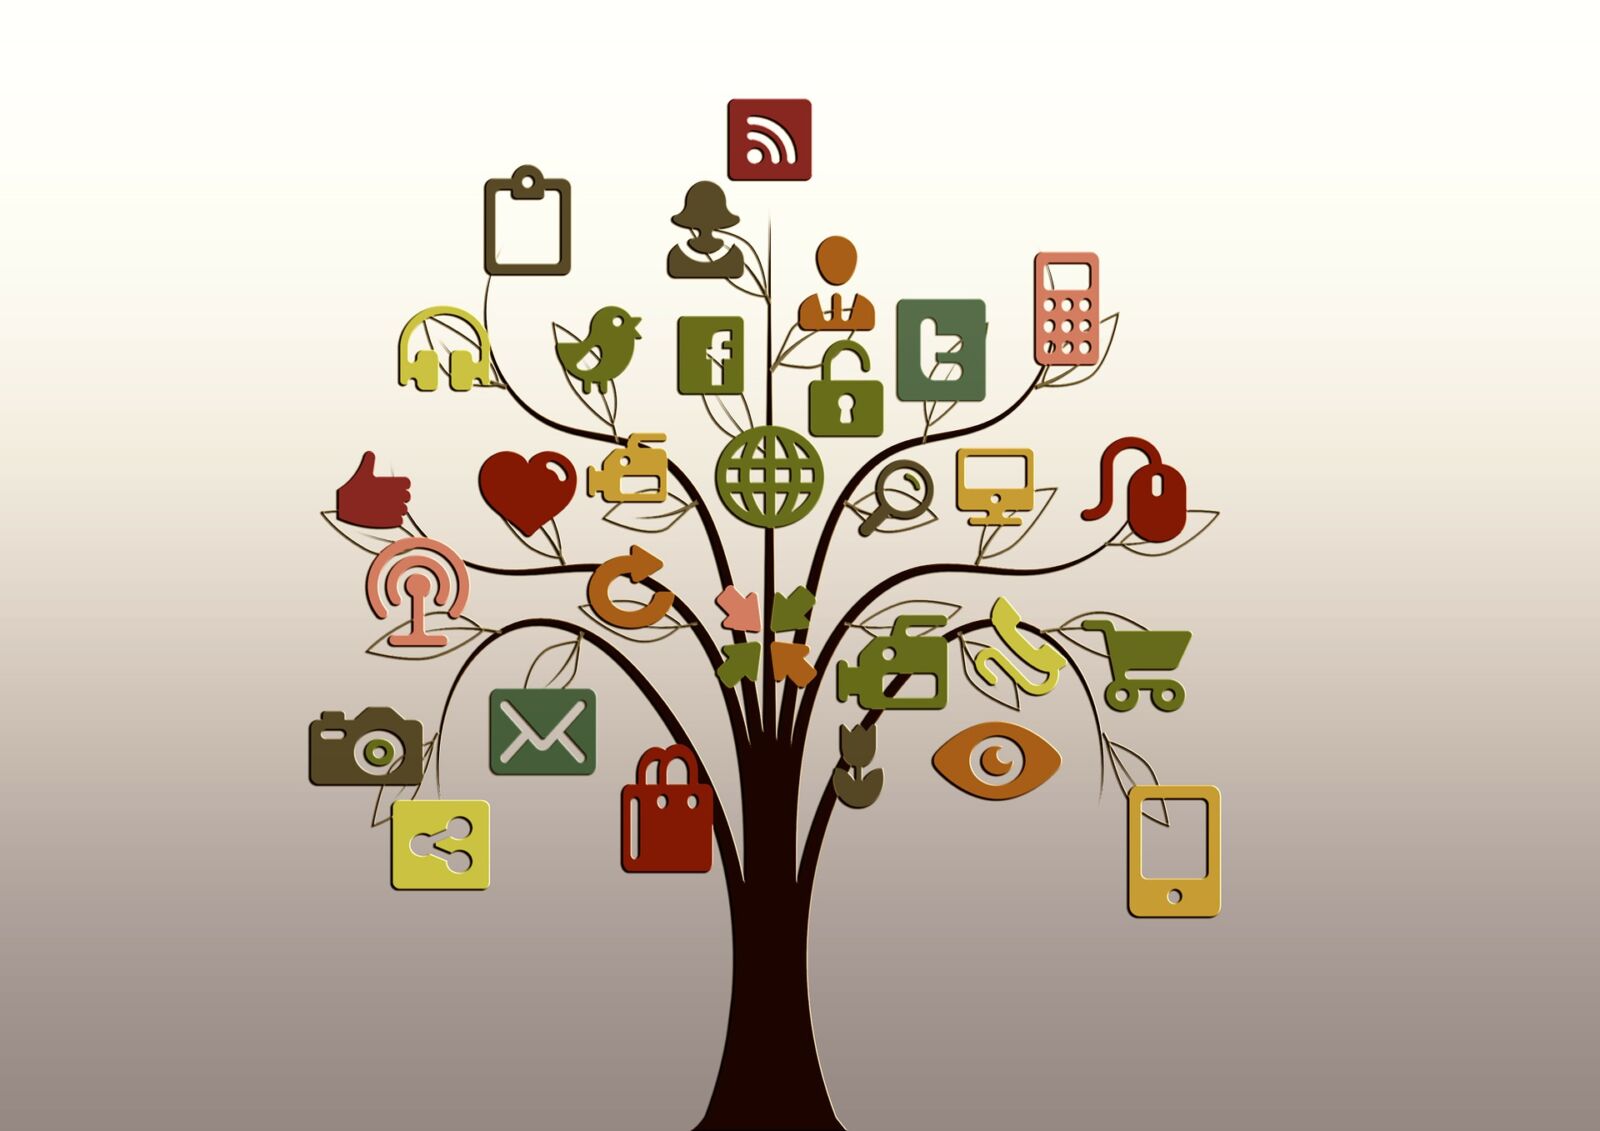 Avvio consultazione pubblica “Linee guida per il corretto utilizzo delle tecnologie informatiche e dei mezzi di informazione e social media”